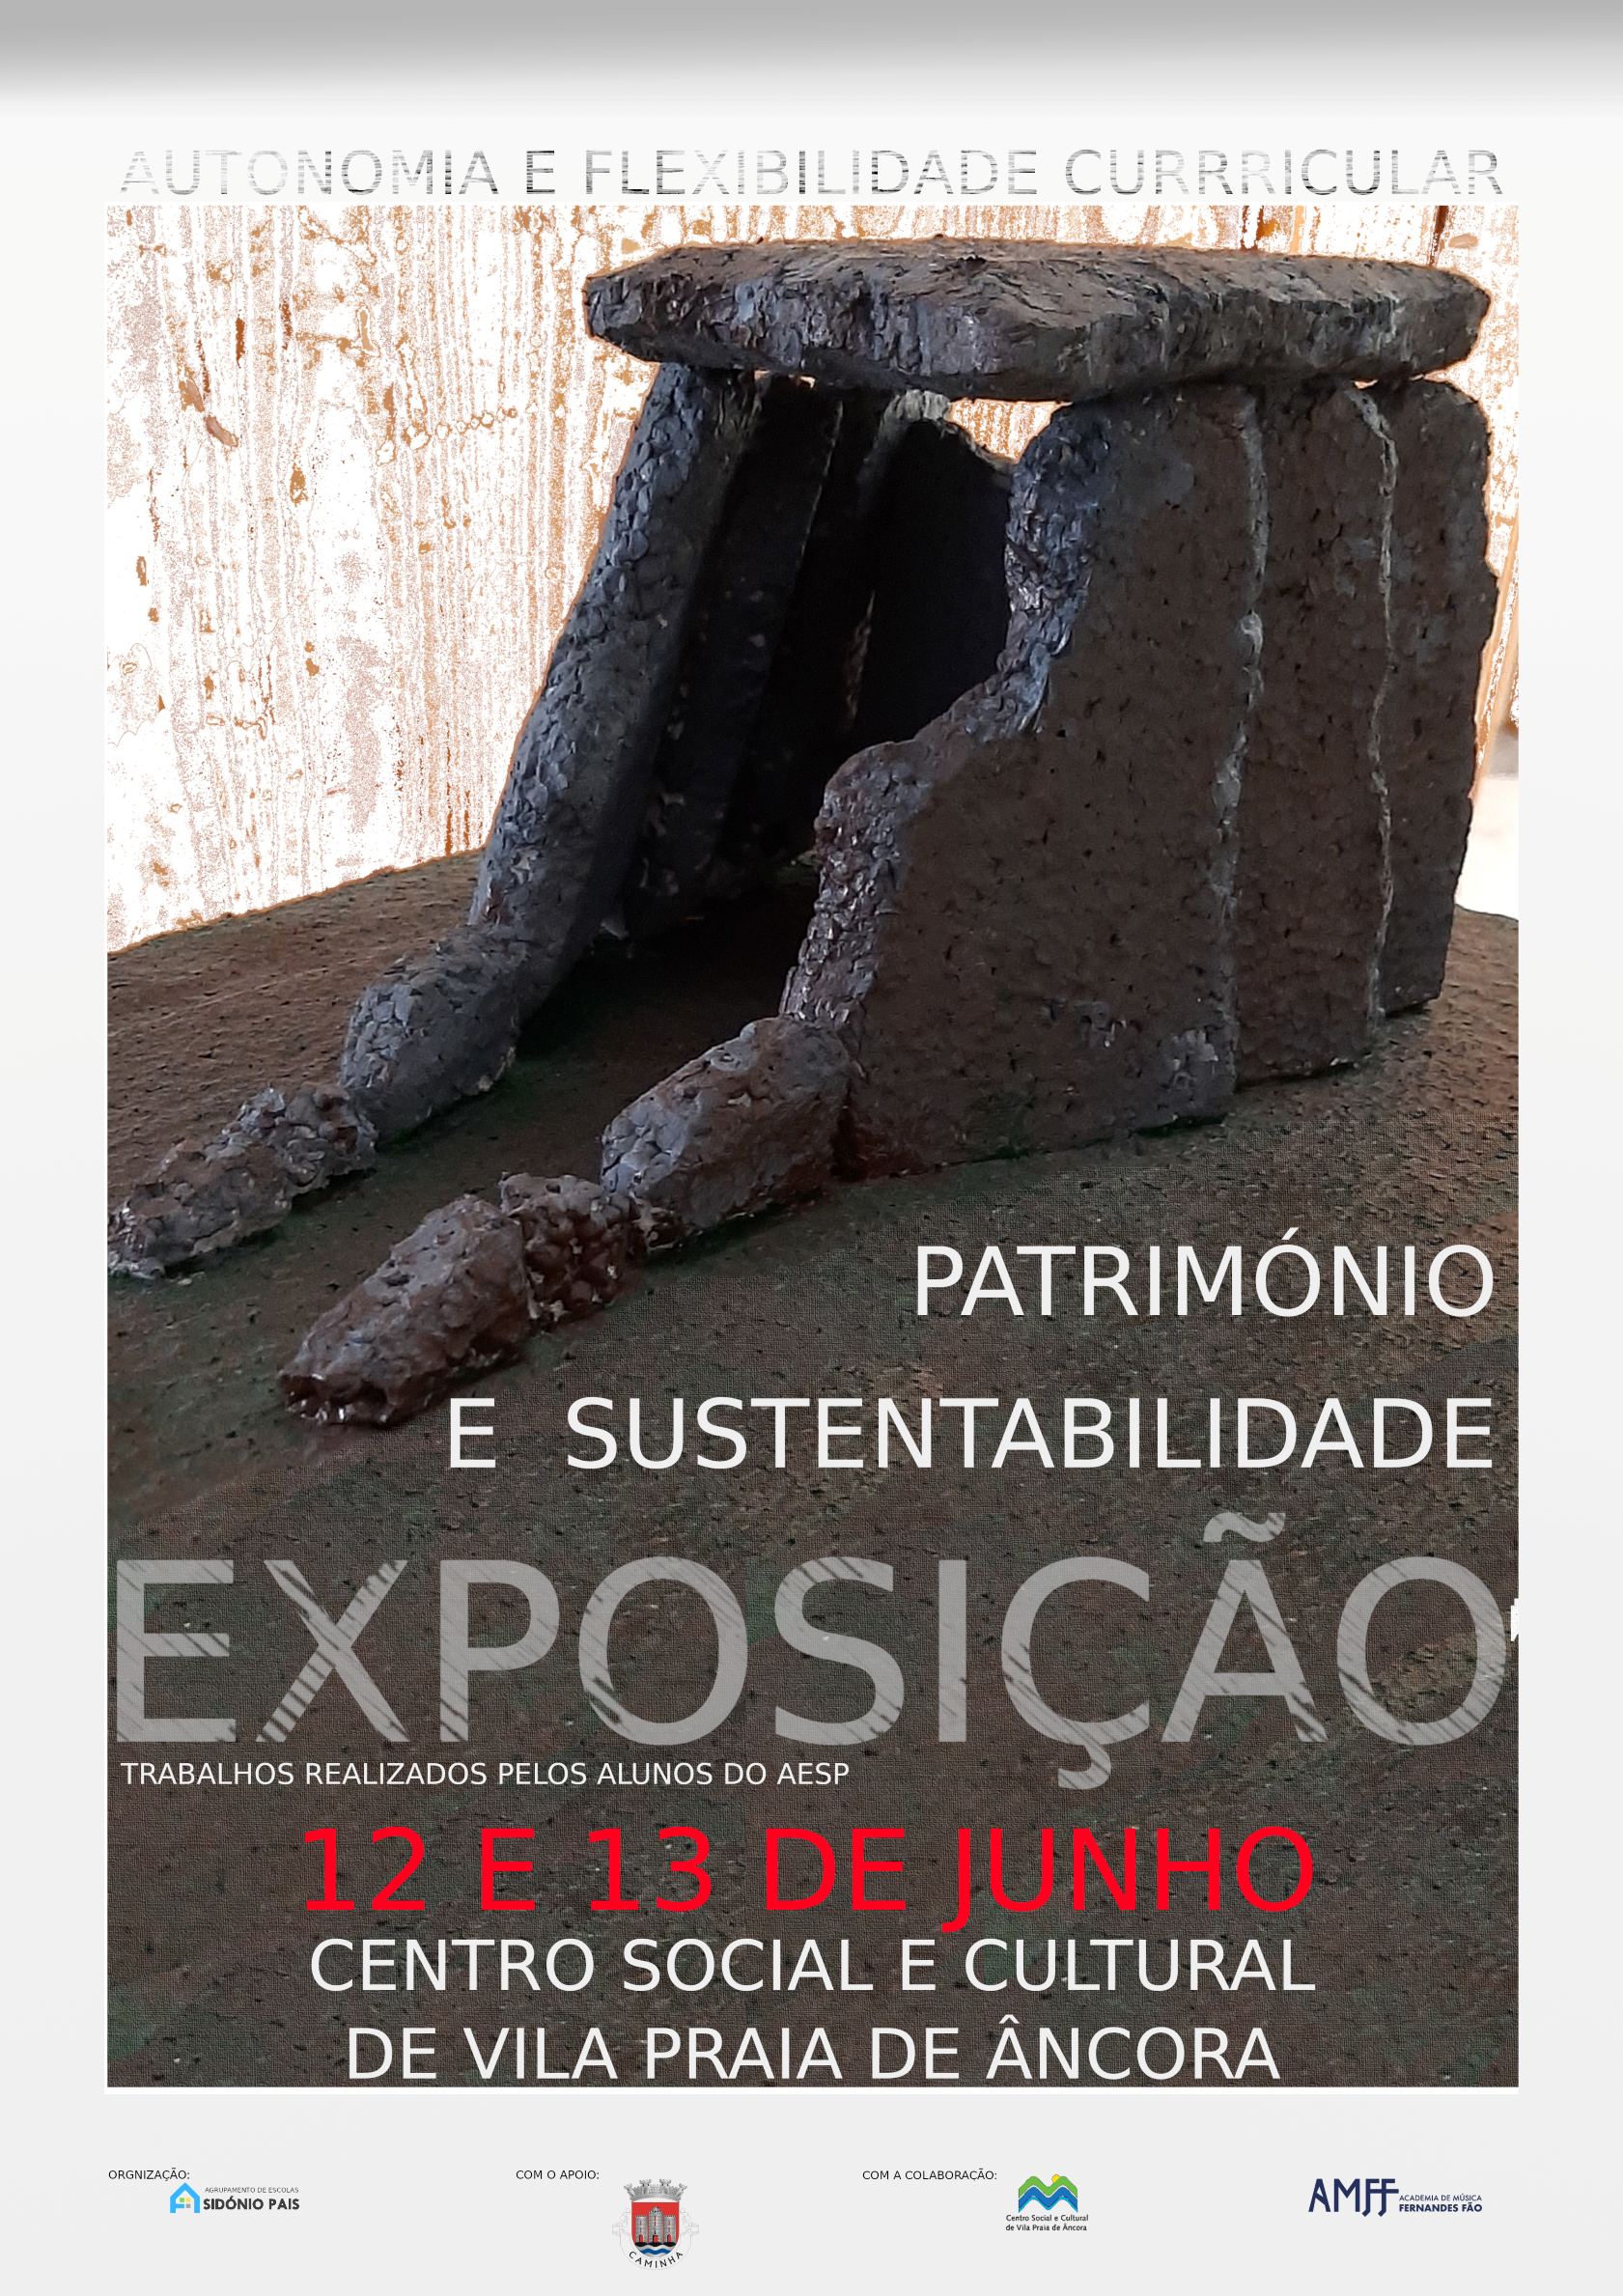 Exposição "Património e Sustentabilidade"